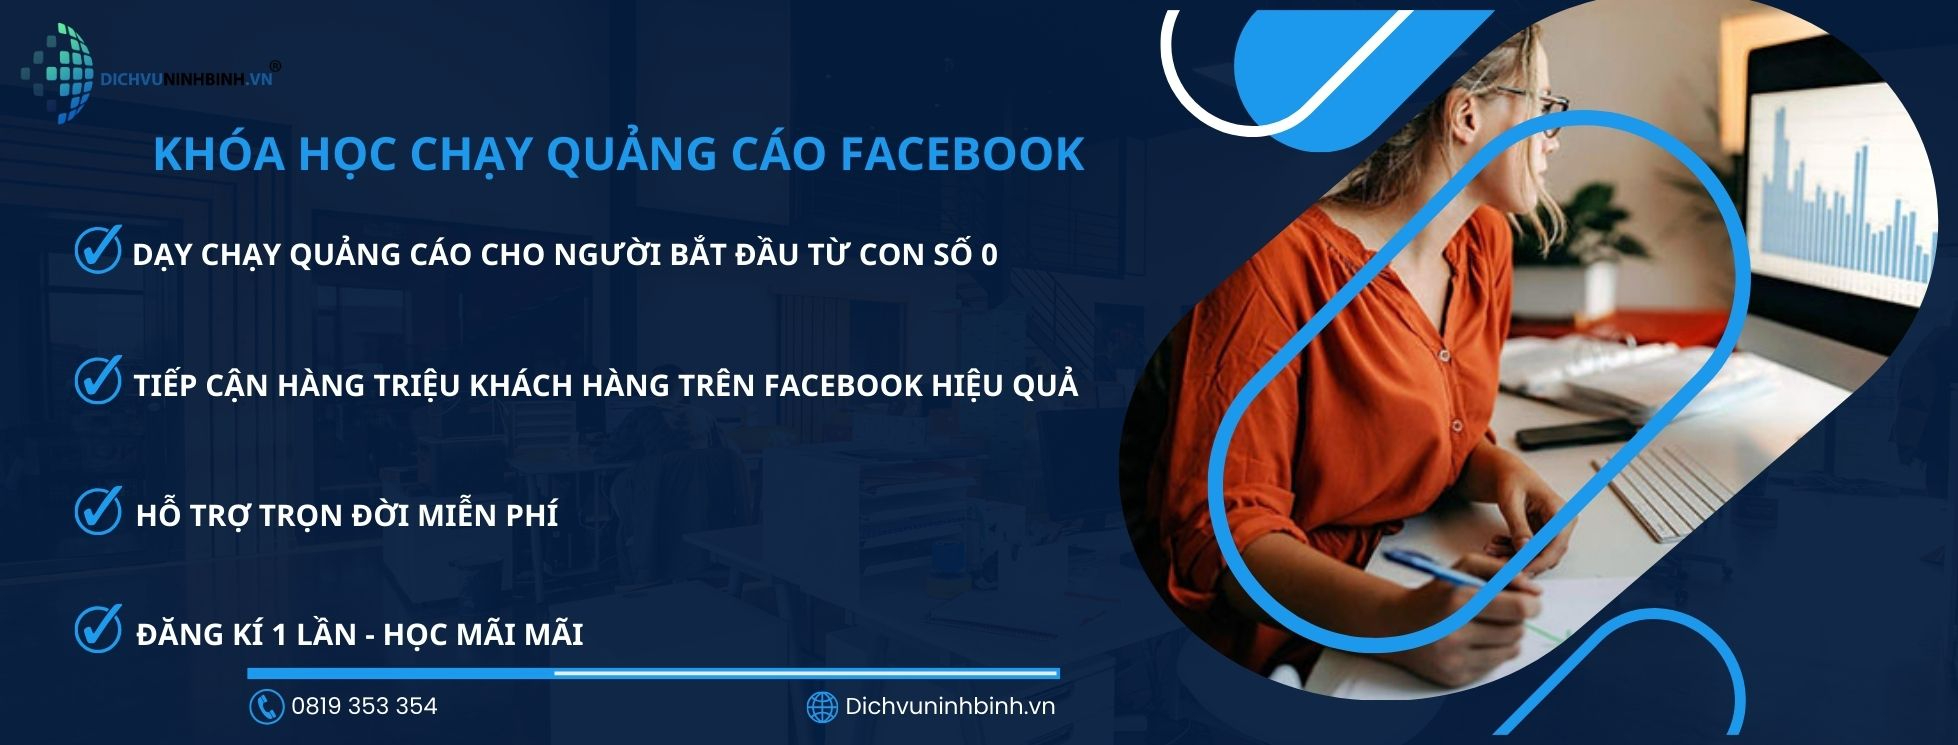 Khóa học chạy quảng cáo Facebook - Dichvuninhbinh.vn